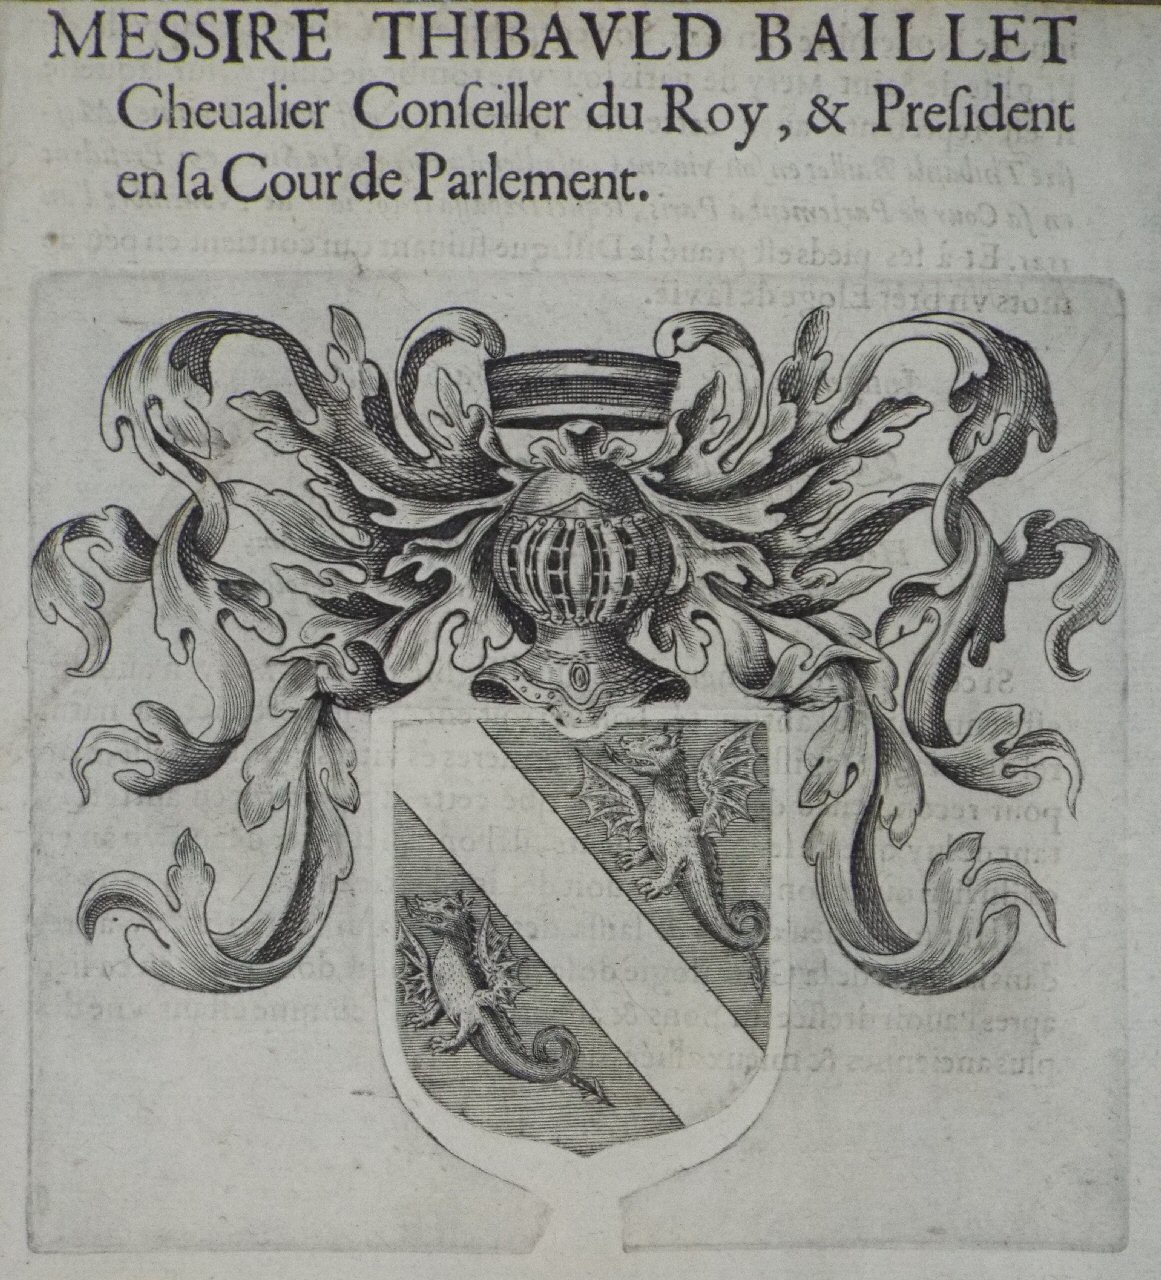 Print - Messire Thibauld Baillet Chevalier Conseiller du Roy, & President en sa Cour de Parlement.